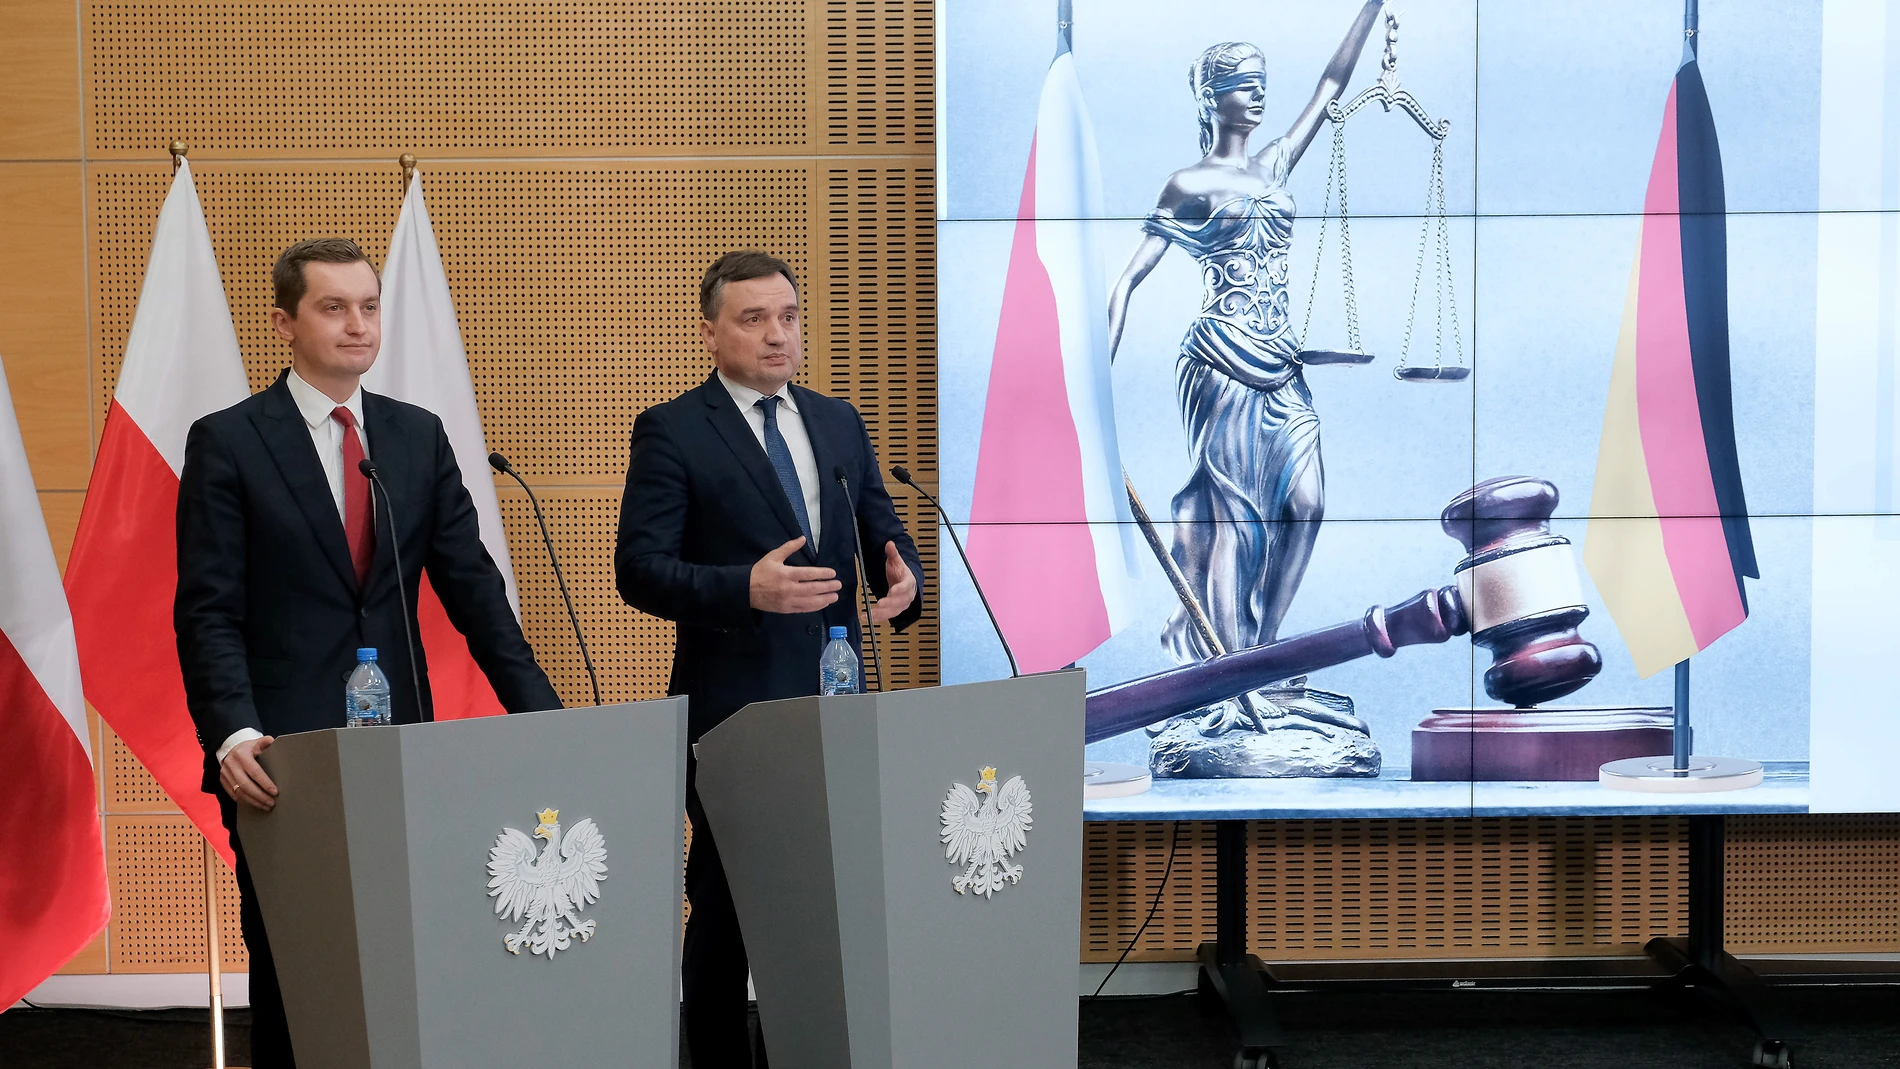 Polonia tendrá que pagar una multa de 1 millón de euros al día mientras no suspenda mientras no suspenda la Cámara Disciplinaria del Tribunal Supremo